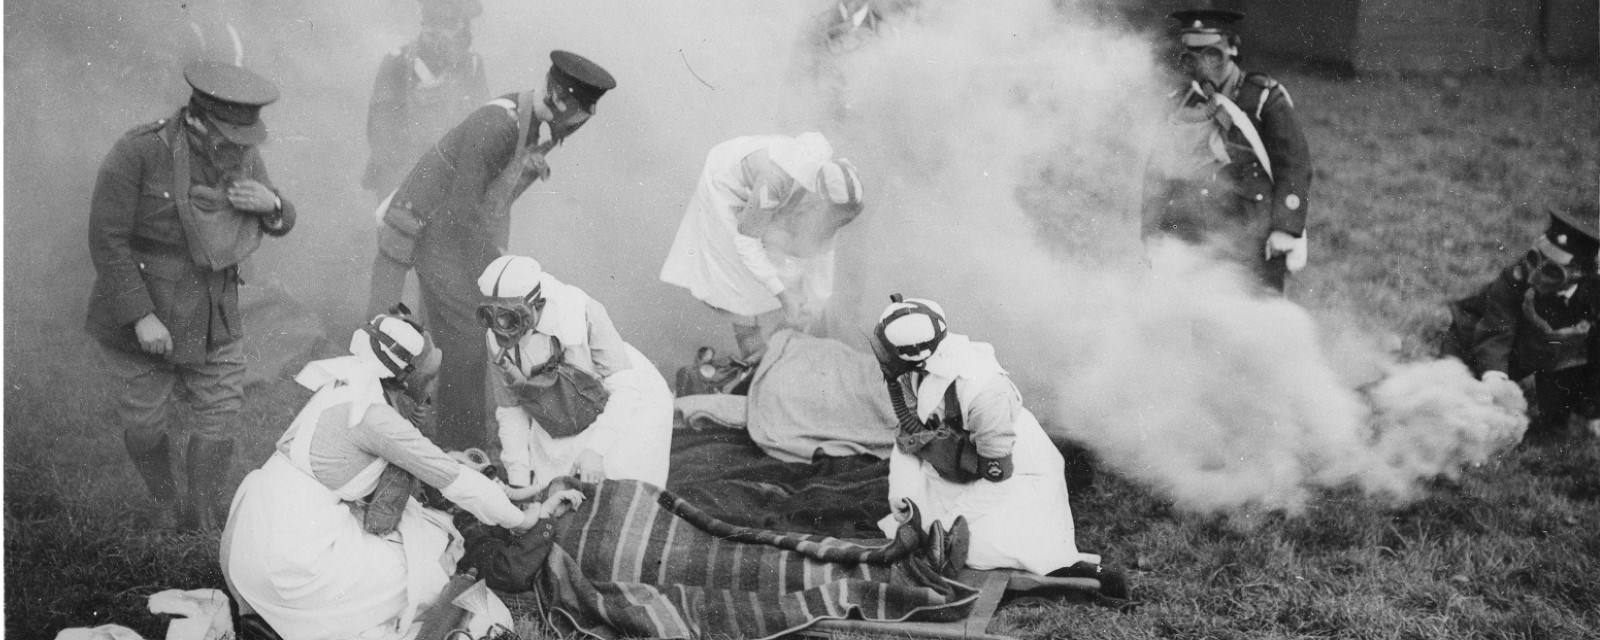 Helsepersonell og soldater iført gassmasker står bøyd over pasienter under en øvelse fra Storbritannia på 30-tallet